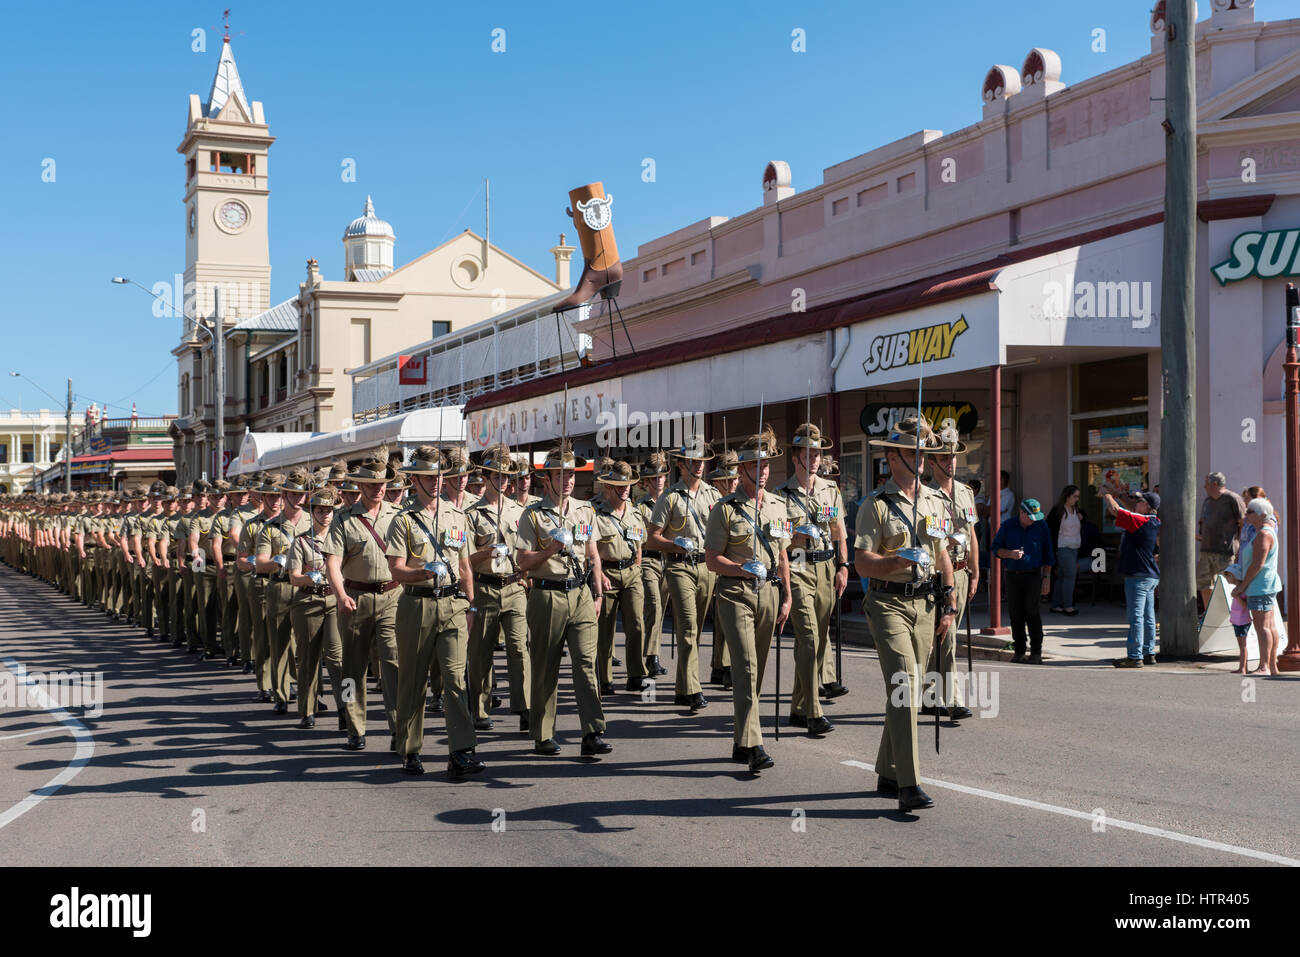 Charters Towers, Australie - 25 Avril 2016 : Des soldats marchant sur la Journée de l'Anzac à Charters Towers, Queensland Australie Banque D'Images